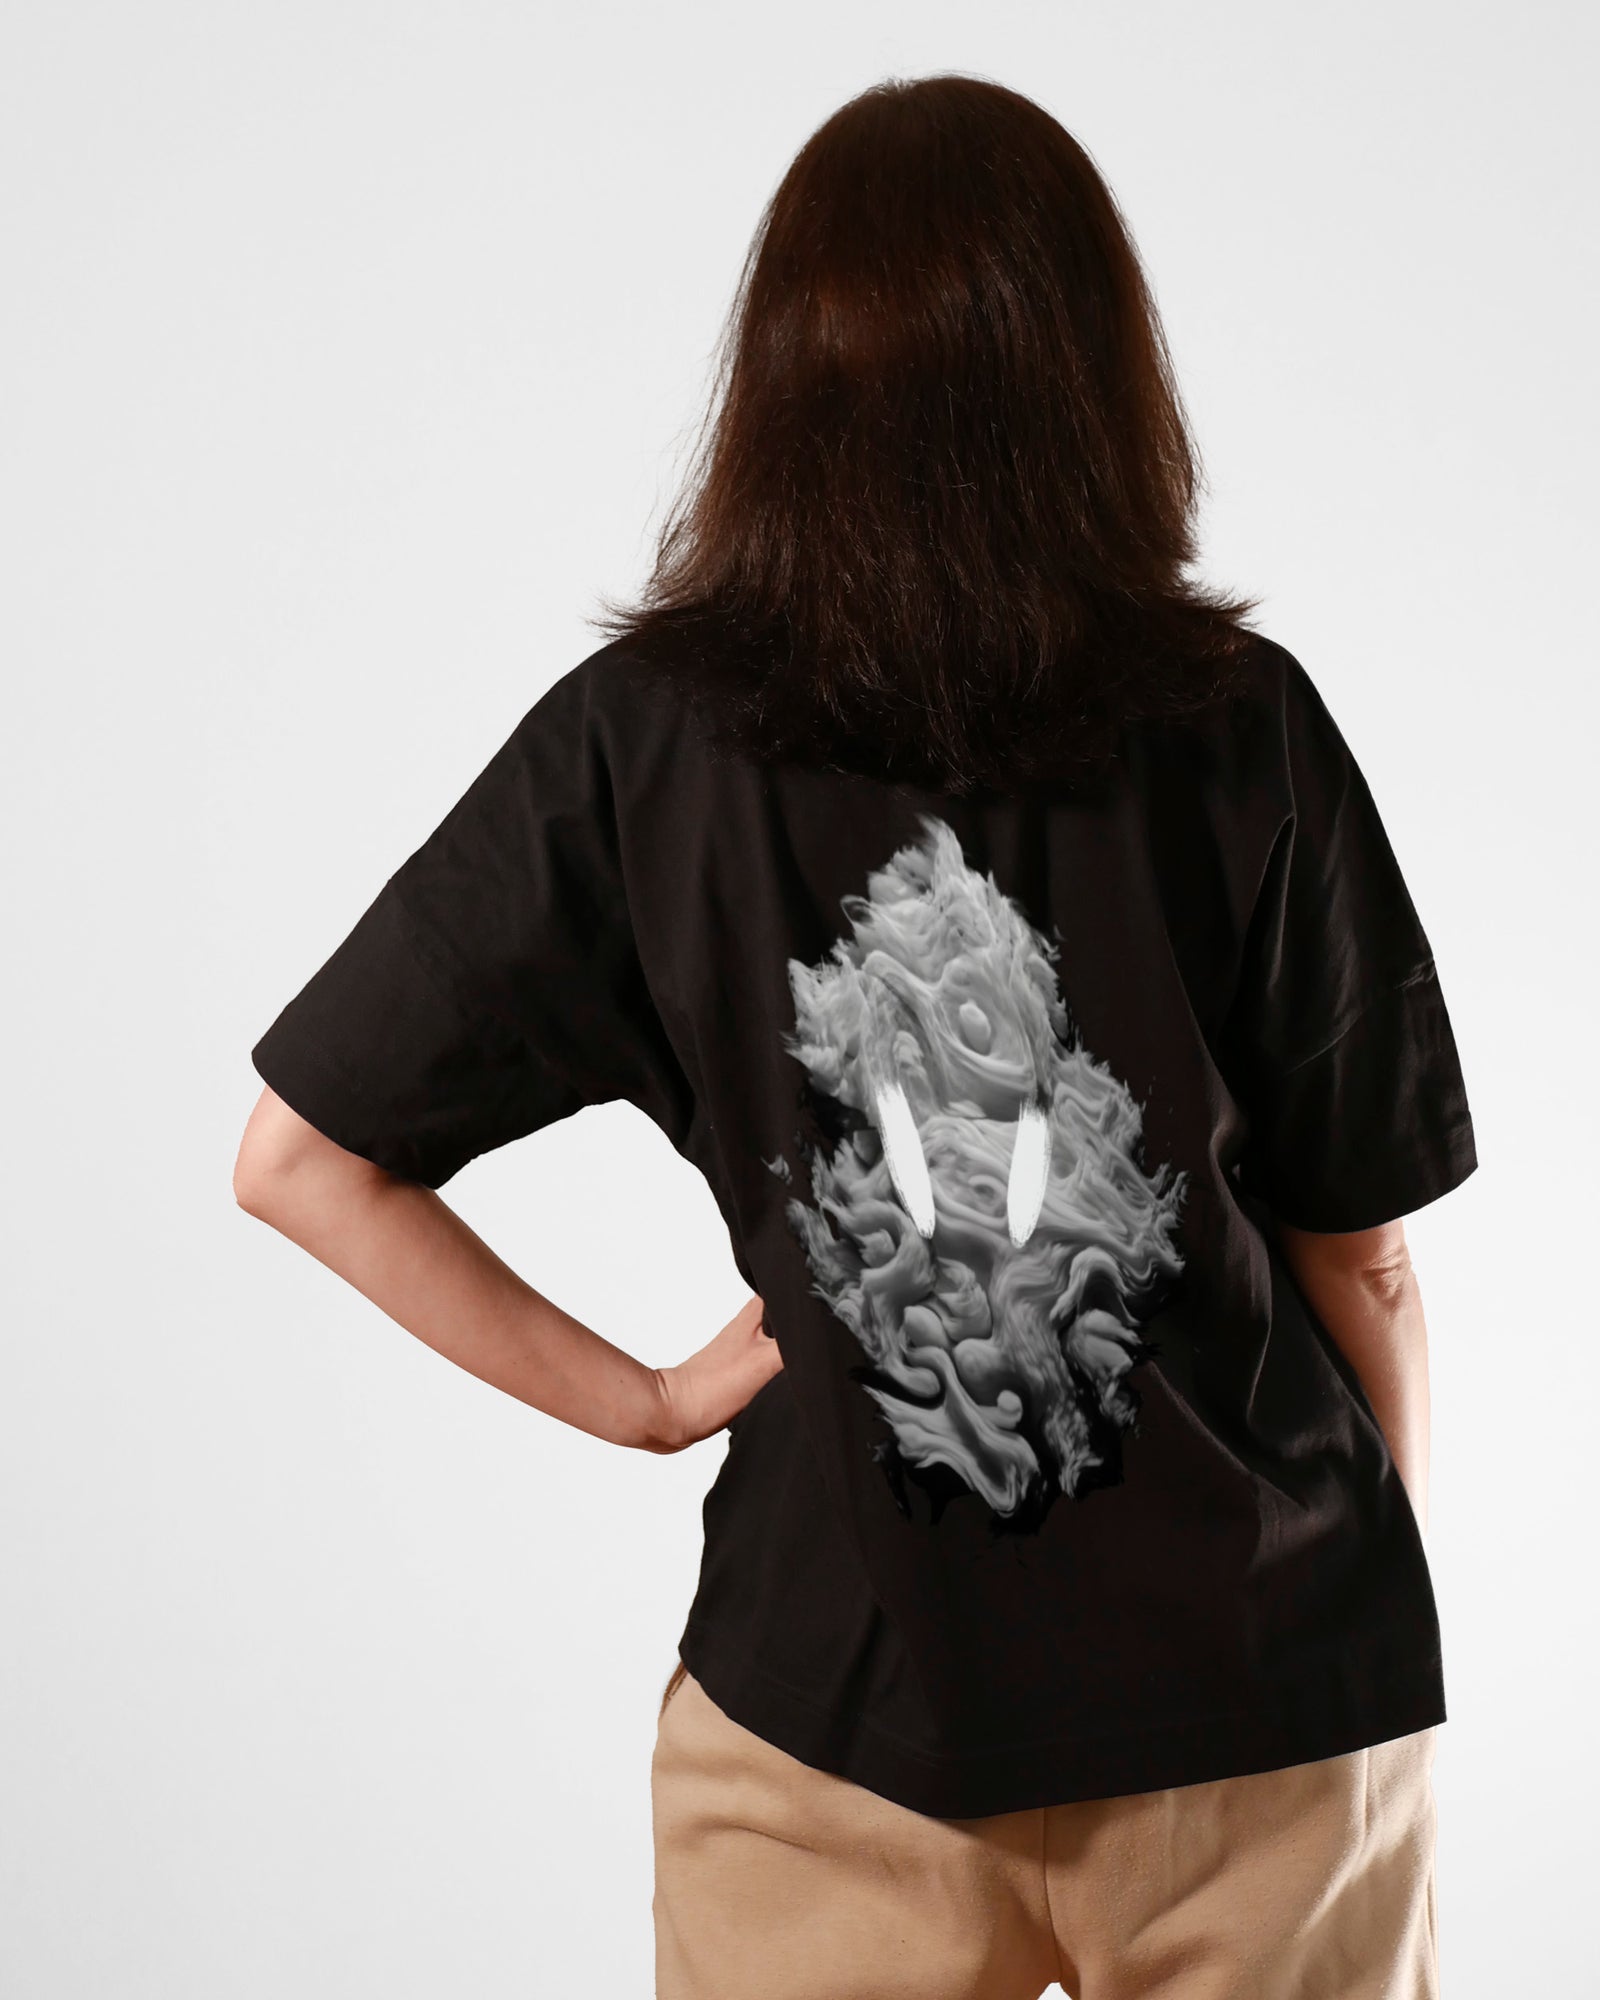 Scary Smoke | 3-Style T-Shirt